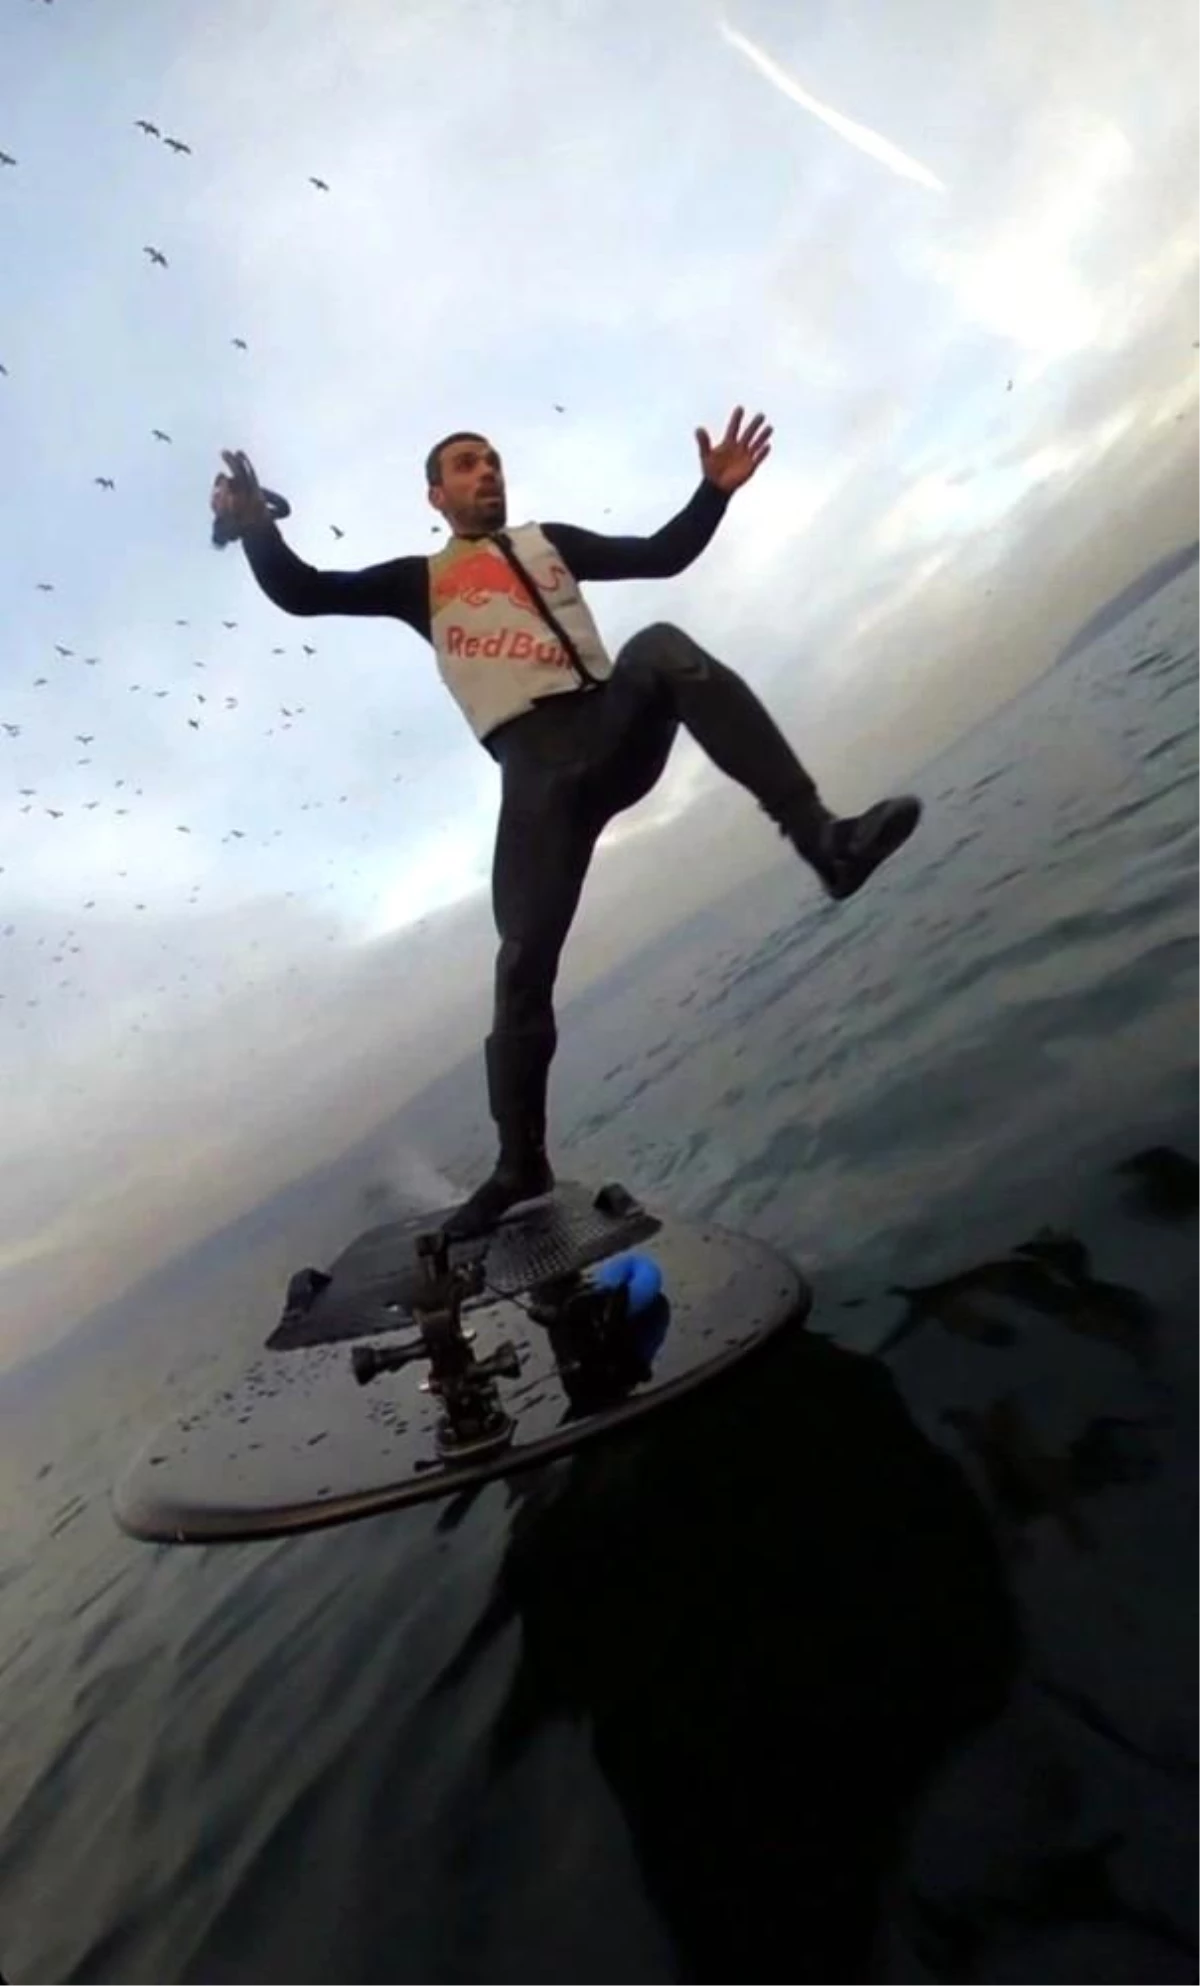 Kenan Sofuoğlu fliteboard yaparken suya düştüğü videoyu paylaştı